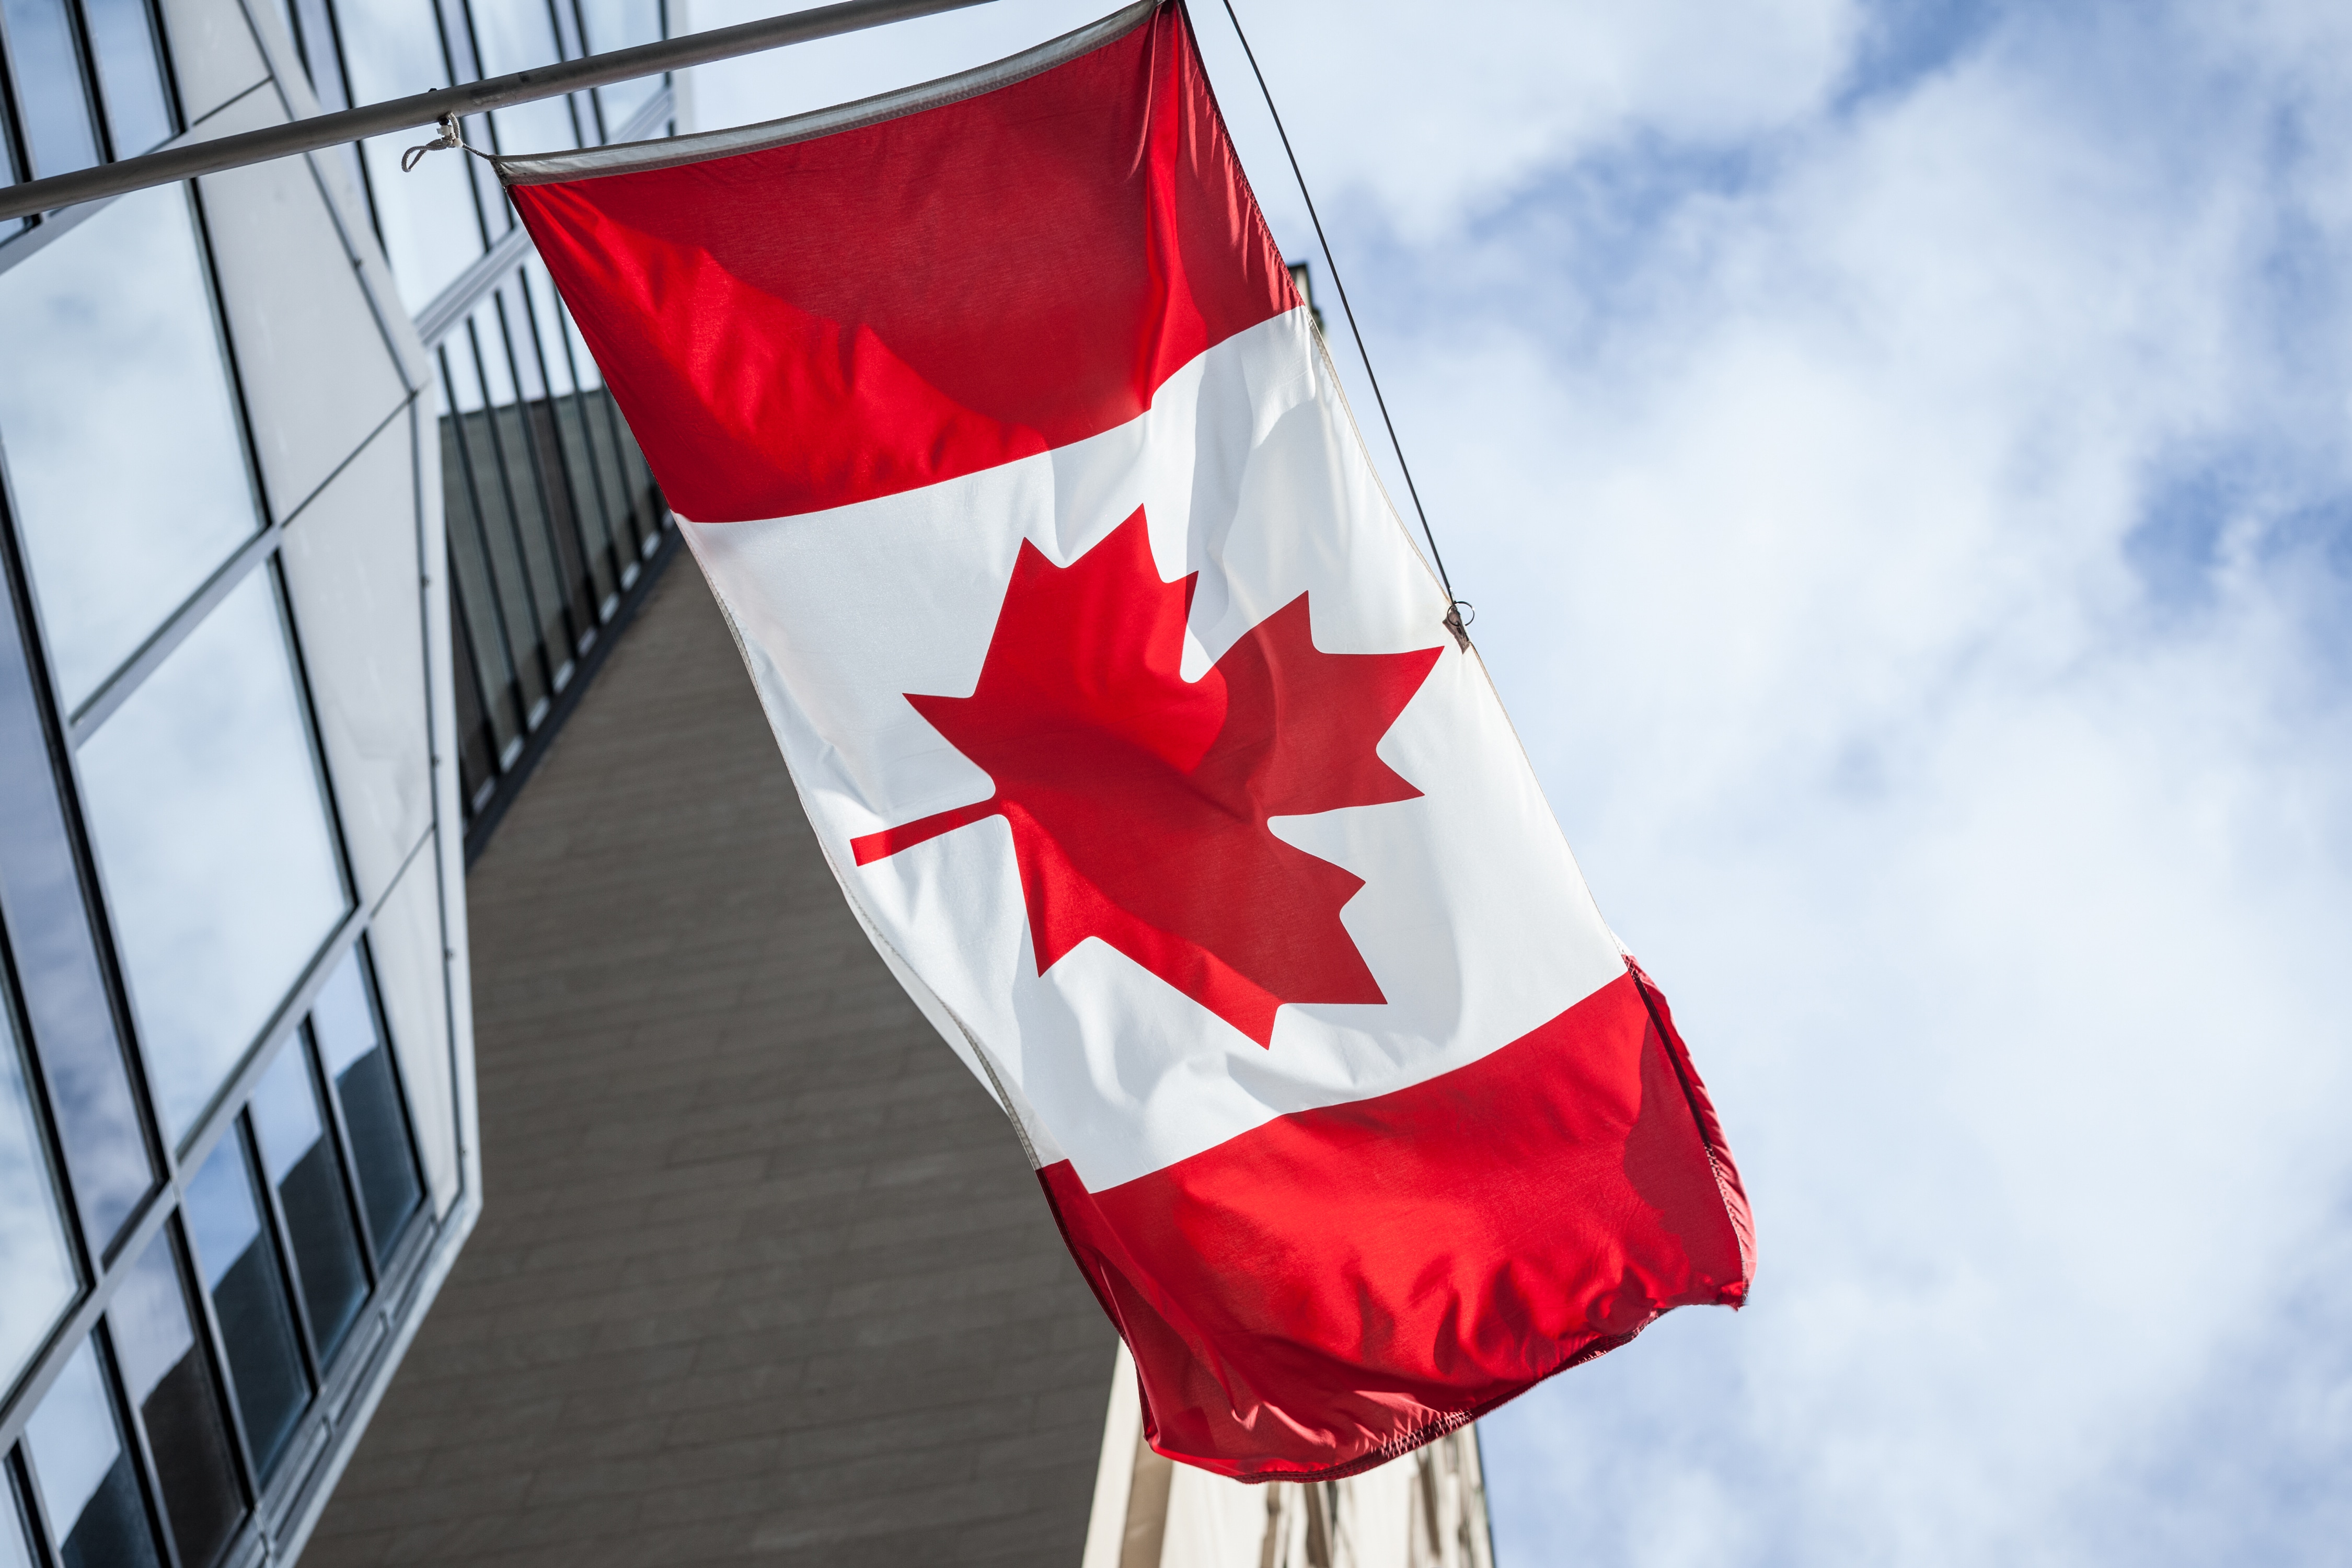 Vacante laboral en Canadá ofrece más de 59 mil pesos al mes